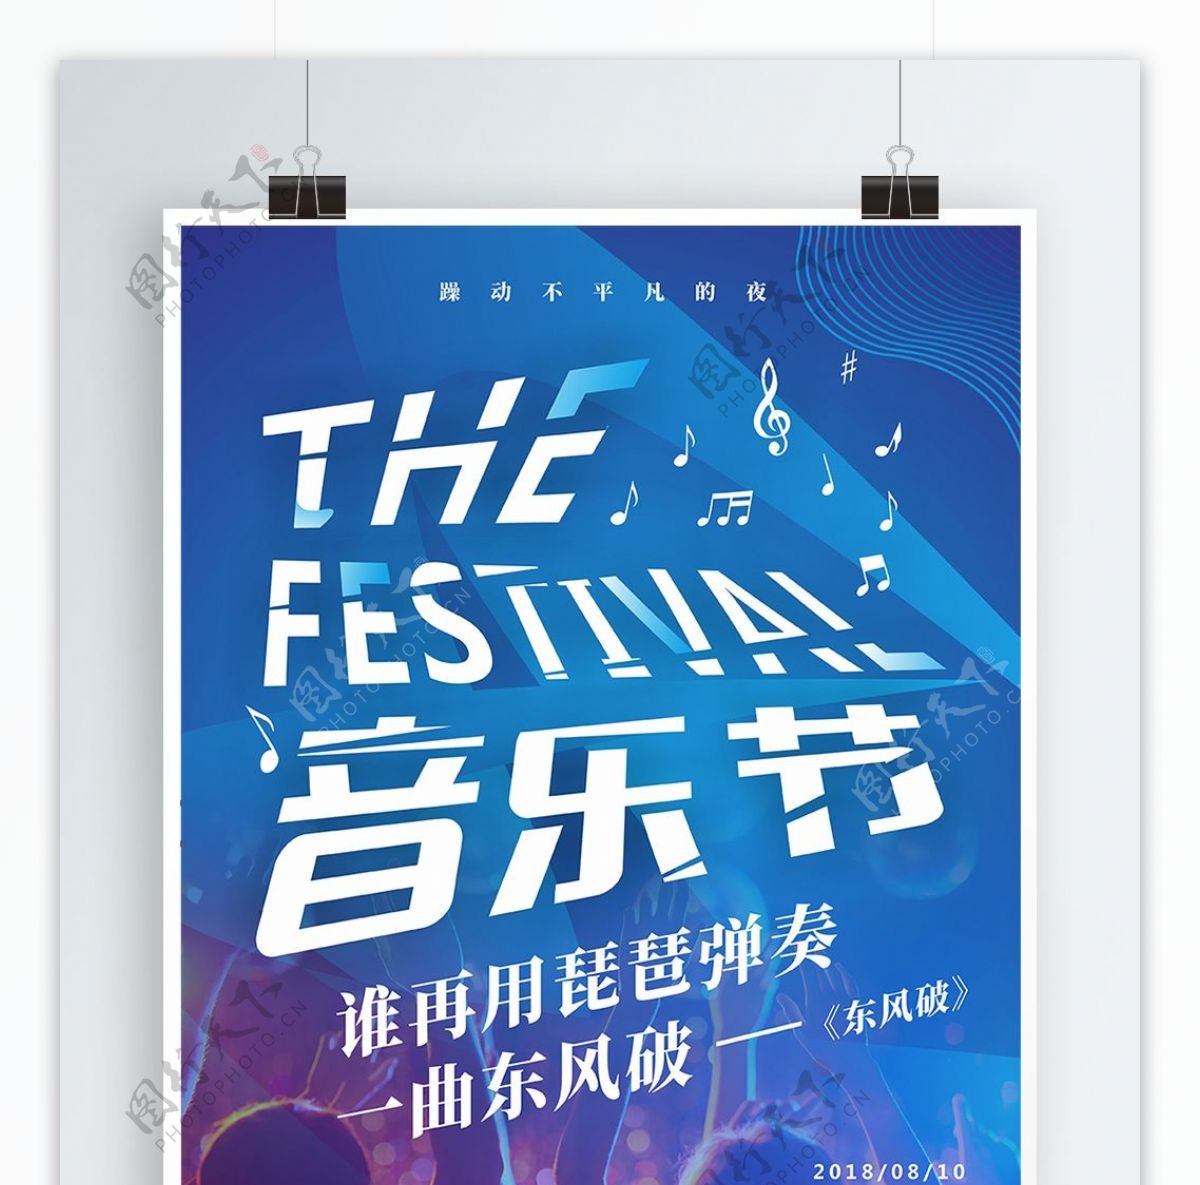 蓝色炫酷创意字体音乐节海报